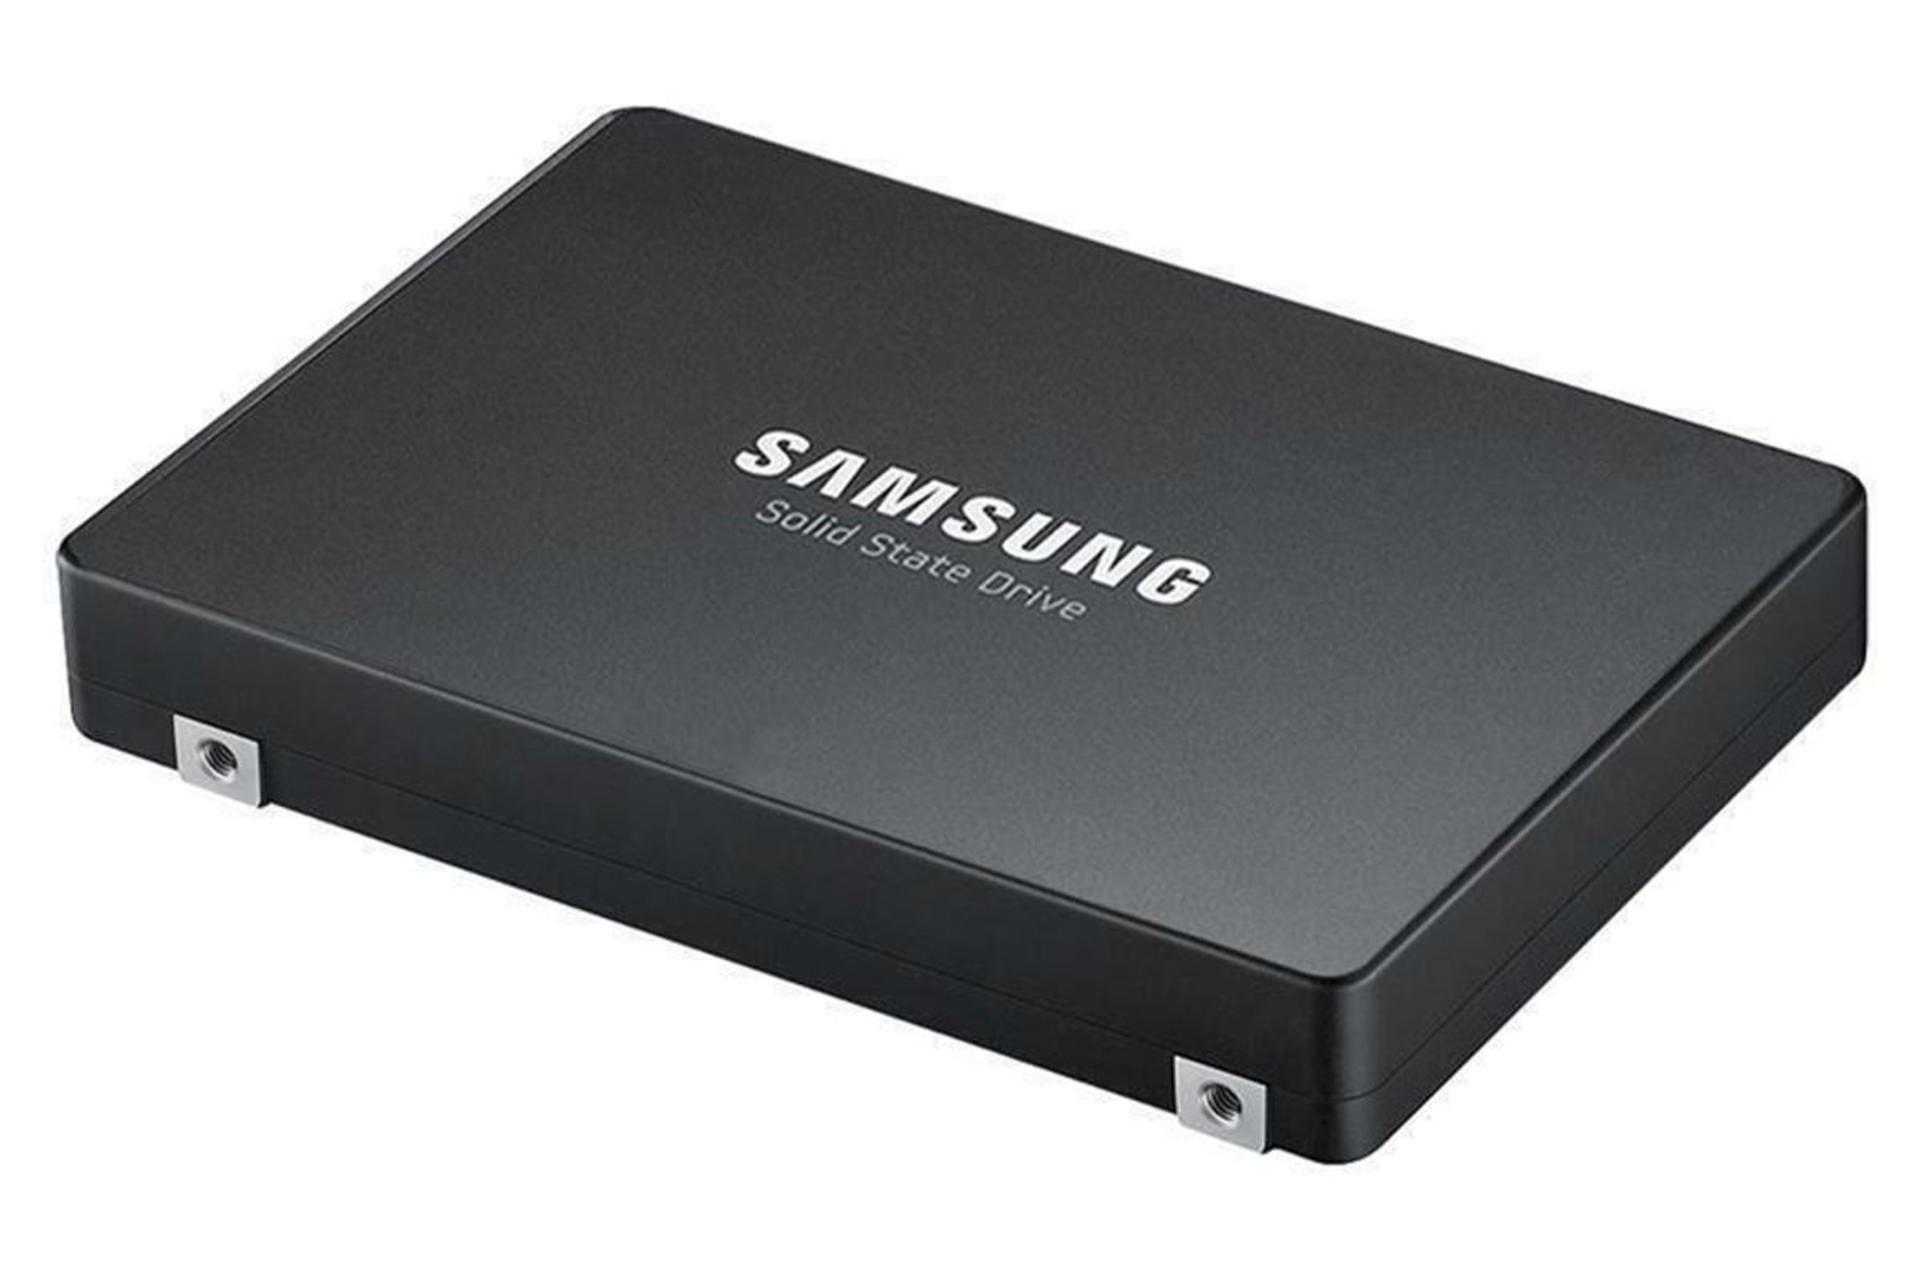 مرجع متخصصين ايران Samsung PM1643 MZ-ILT9600 960GB / سامسونگ PM1643 MZ-ILT9600 ظرفيت 960 گيگابايت